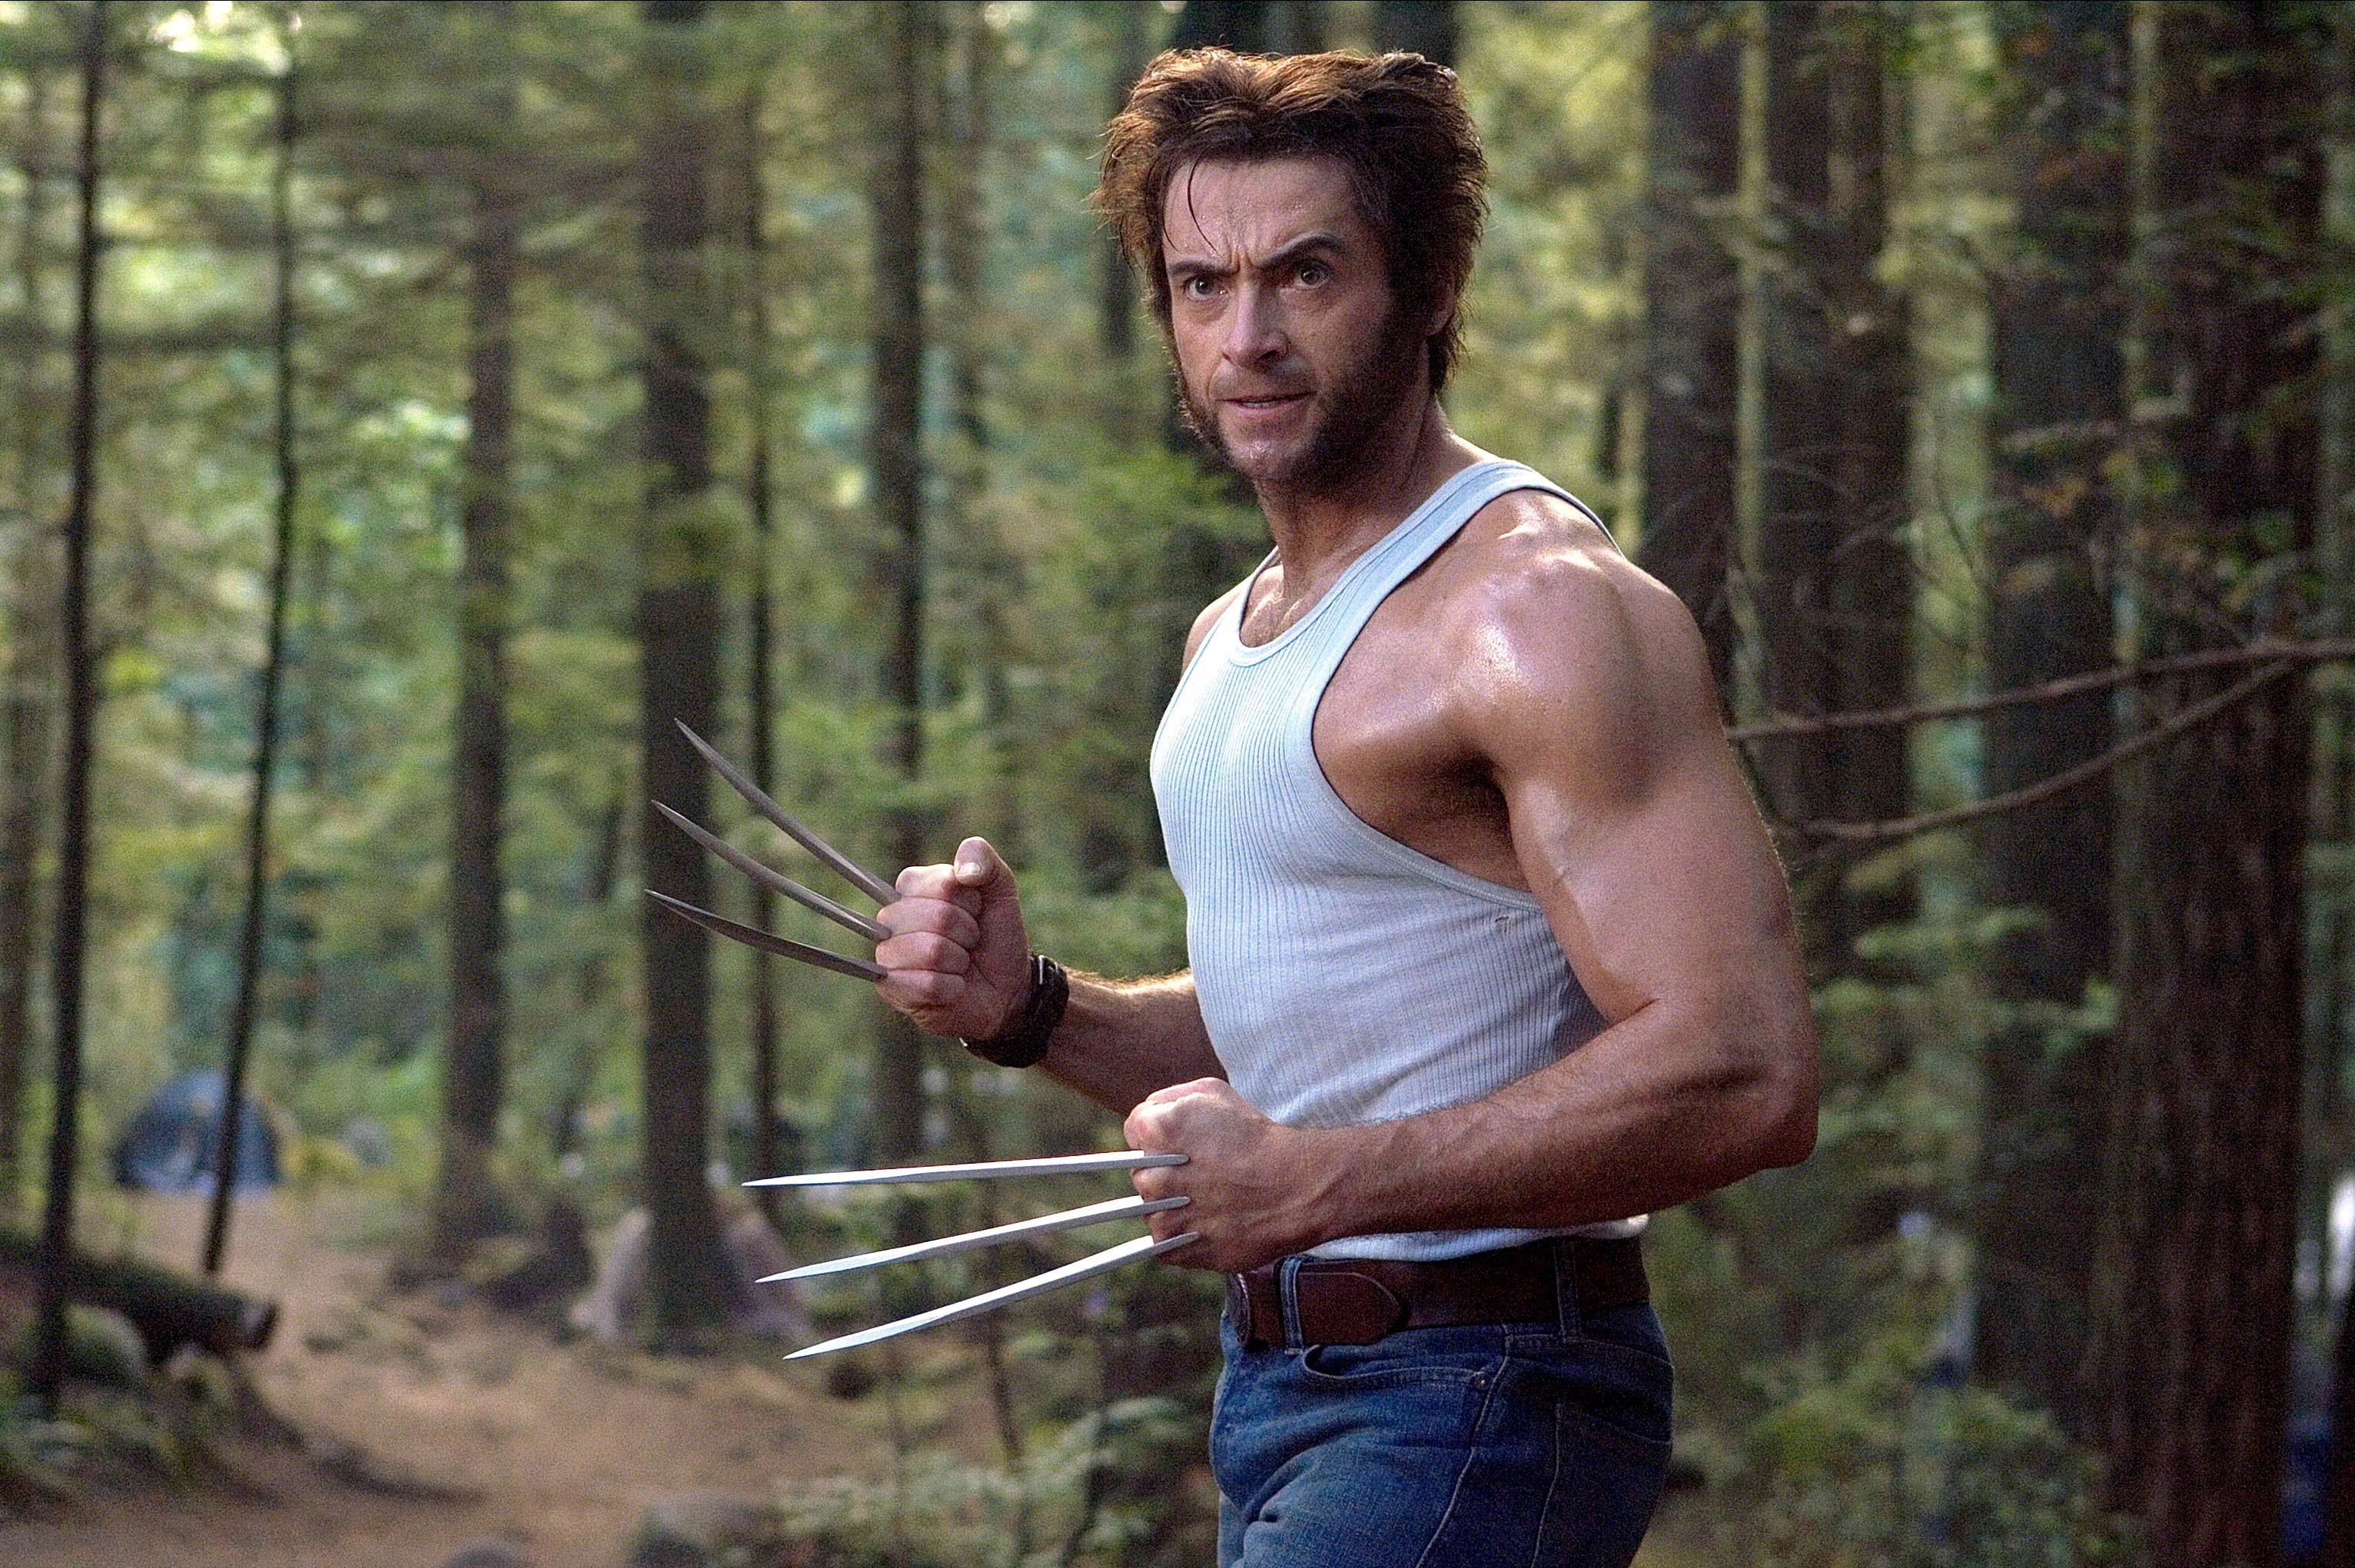 Hugh wird seine Wolverine-Rolle in Deadpool 3 wiederholen